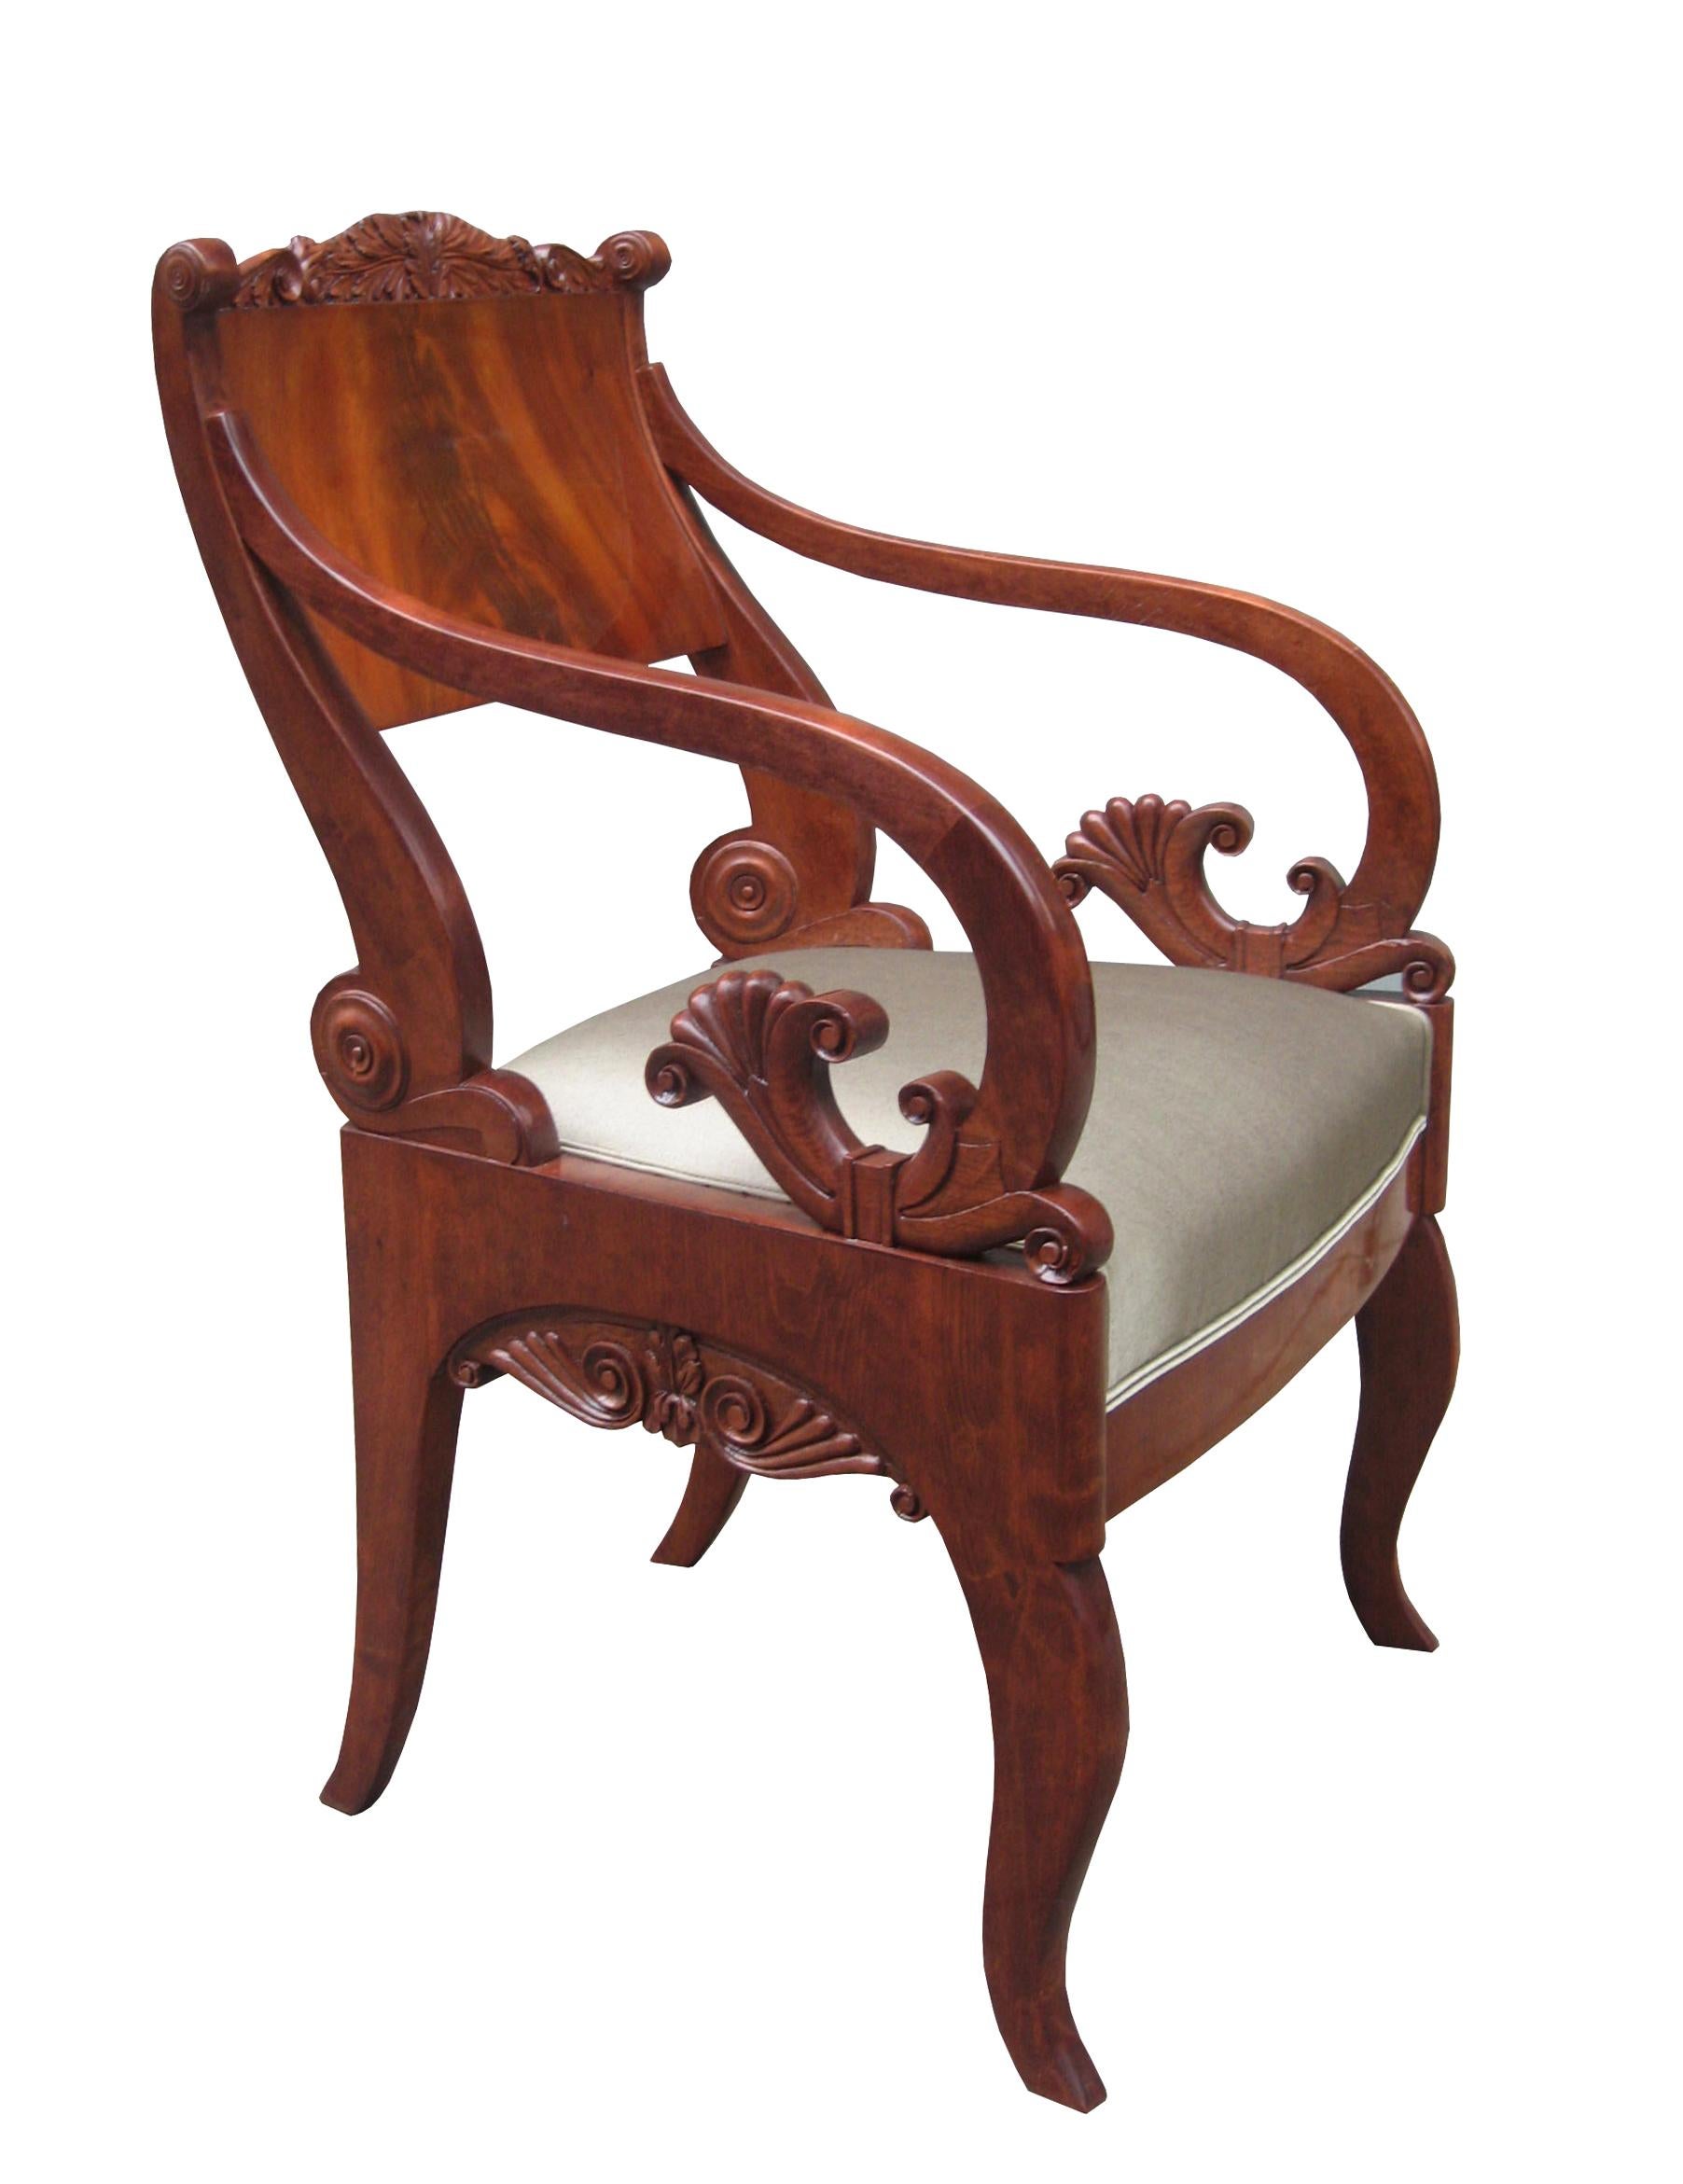 Ein schönes Paar Empire-Sessel.
Massives Mahagoni mit fein geschnitzten Details.